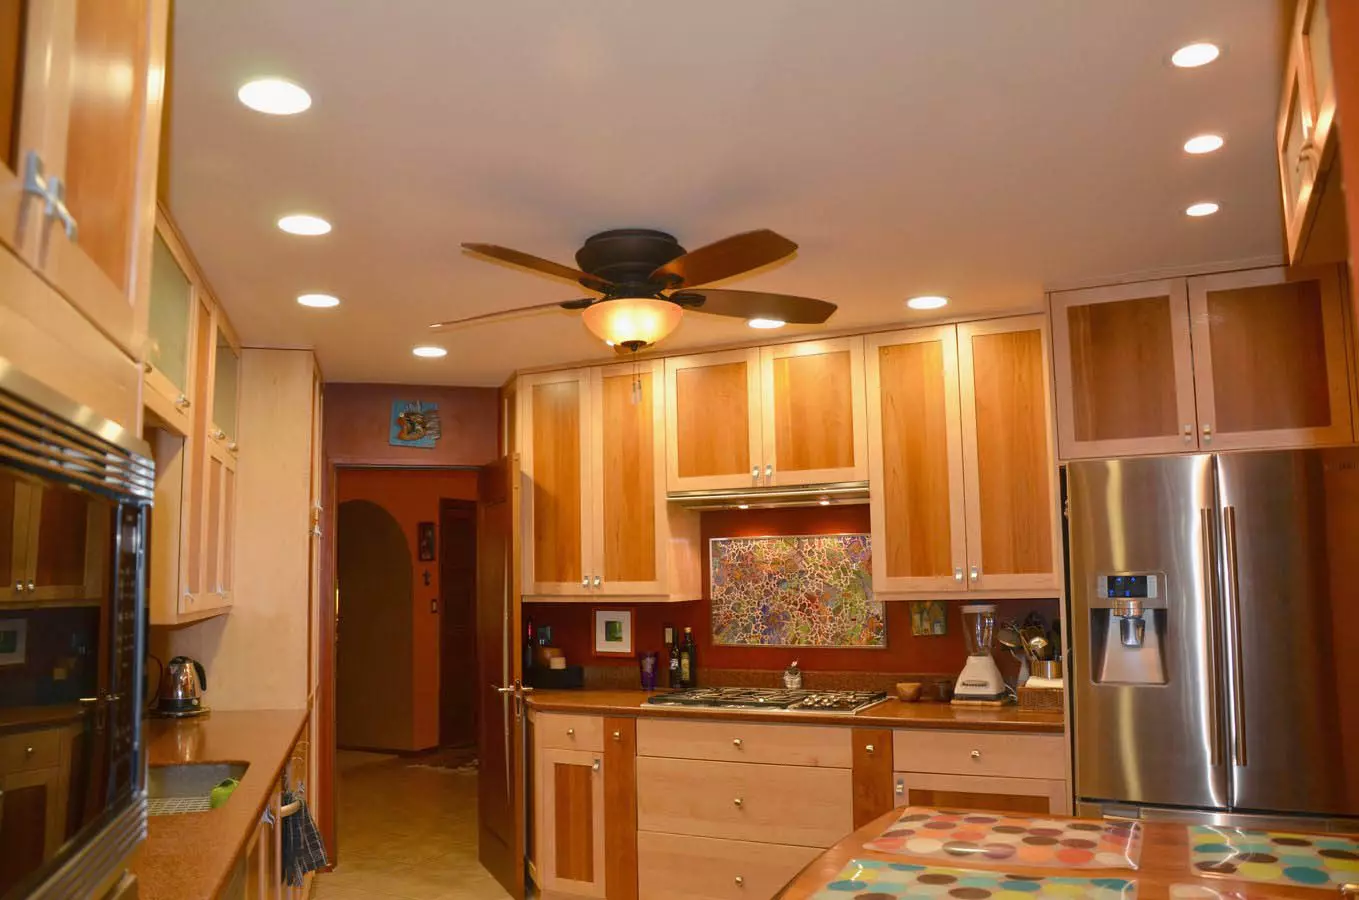 ไฟสปอร์ตไลท์ในห้องครัว (32 รูป): แสงสว่าง ตำแหน่งของพวกเขาเหนือพื้นผิวการทำงานและระยะทางของหลอดไฟจากผนัง 21005_30